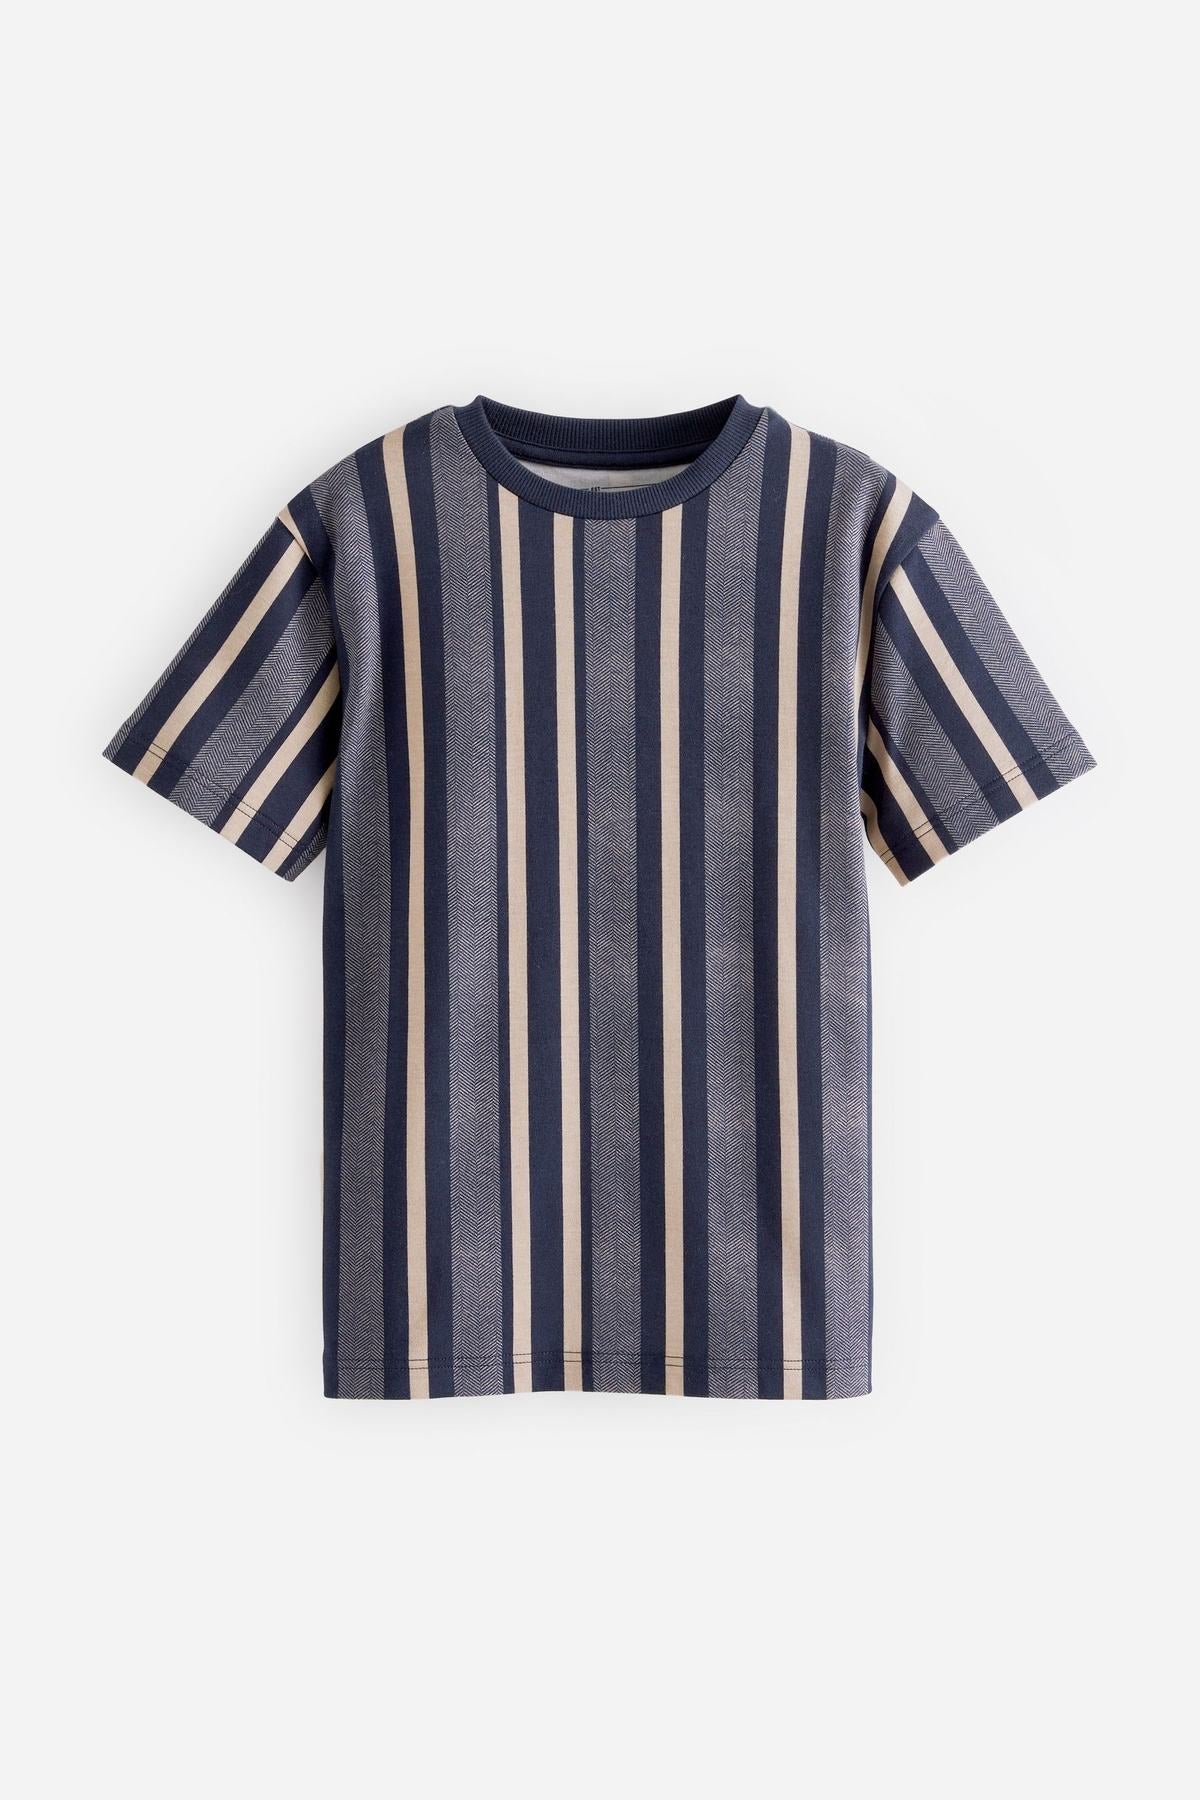 Navy Blue Vertical Stripe Short Sleeve T-Shirt